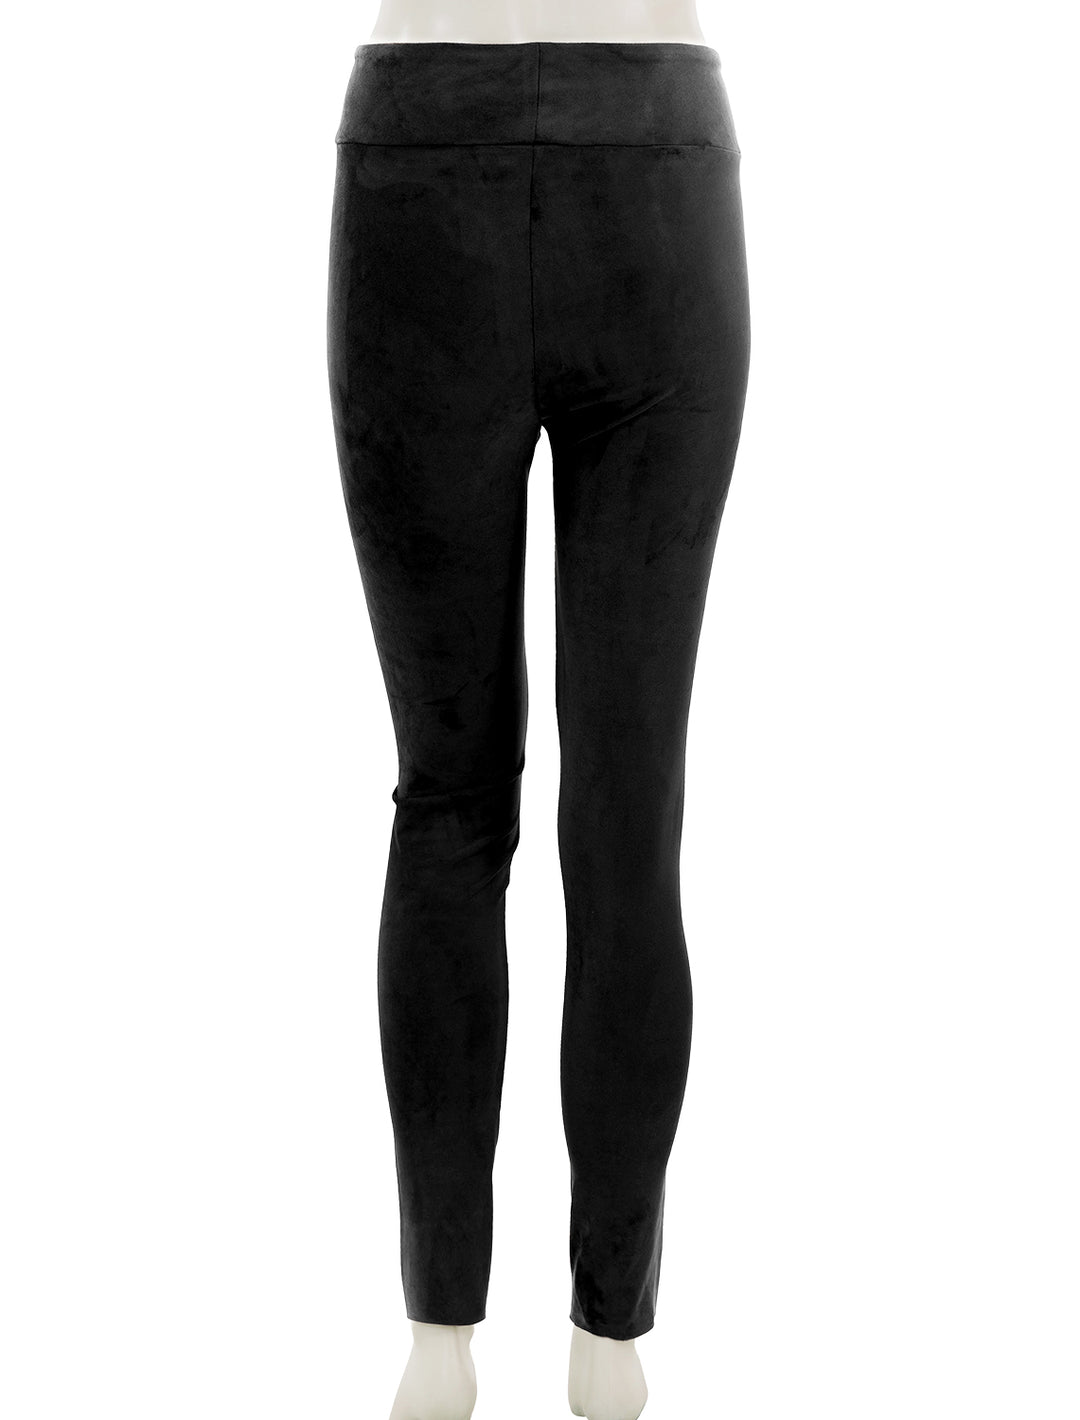 Back view of Splendid's vegan suede leggings in black.